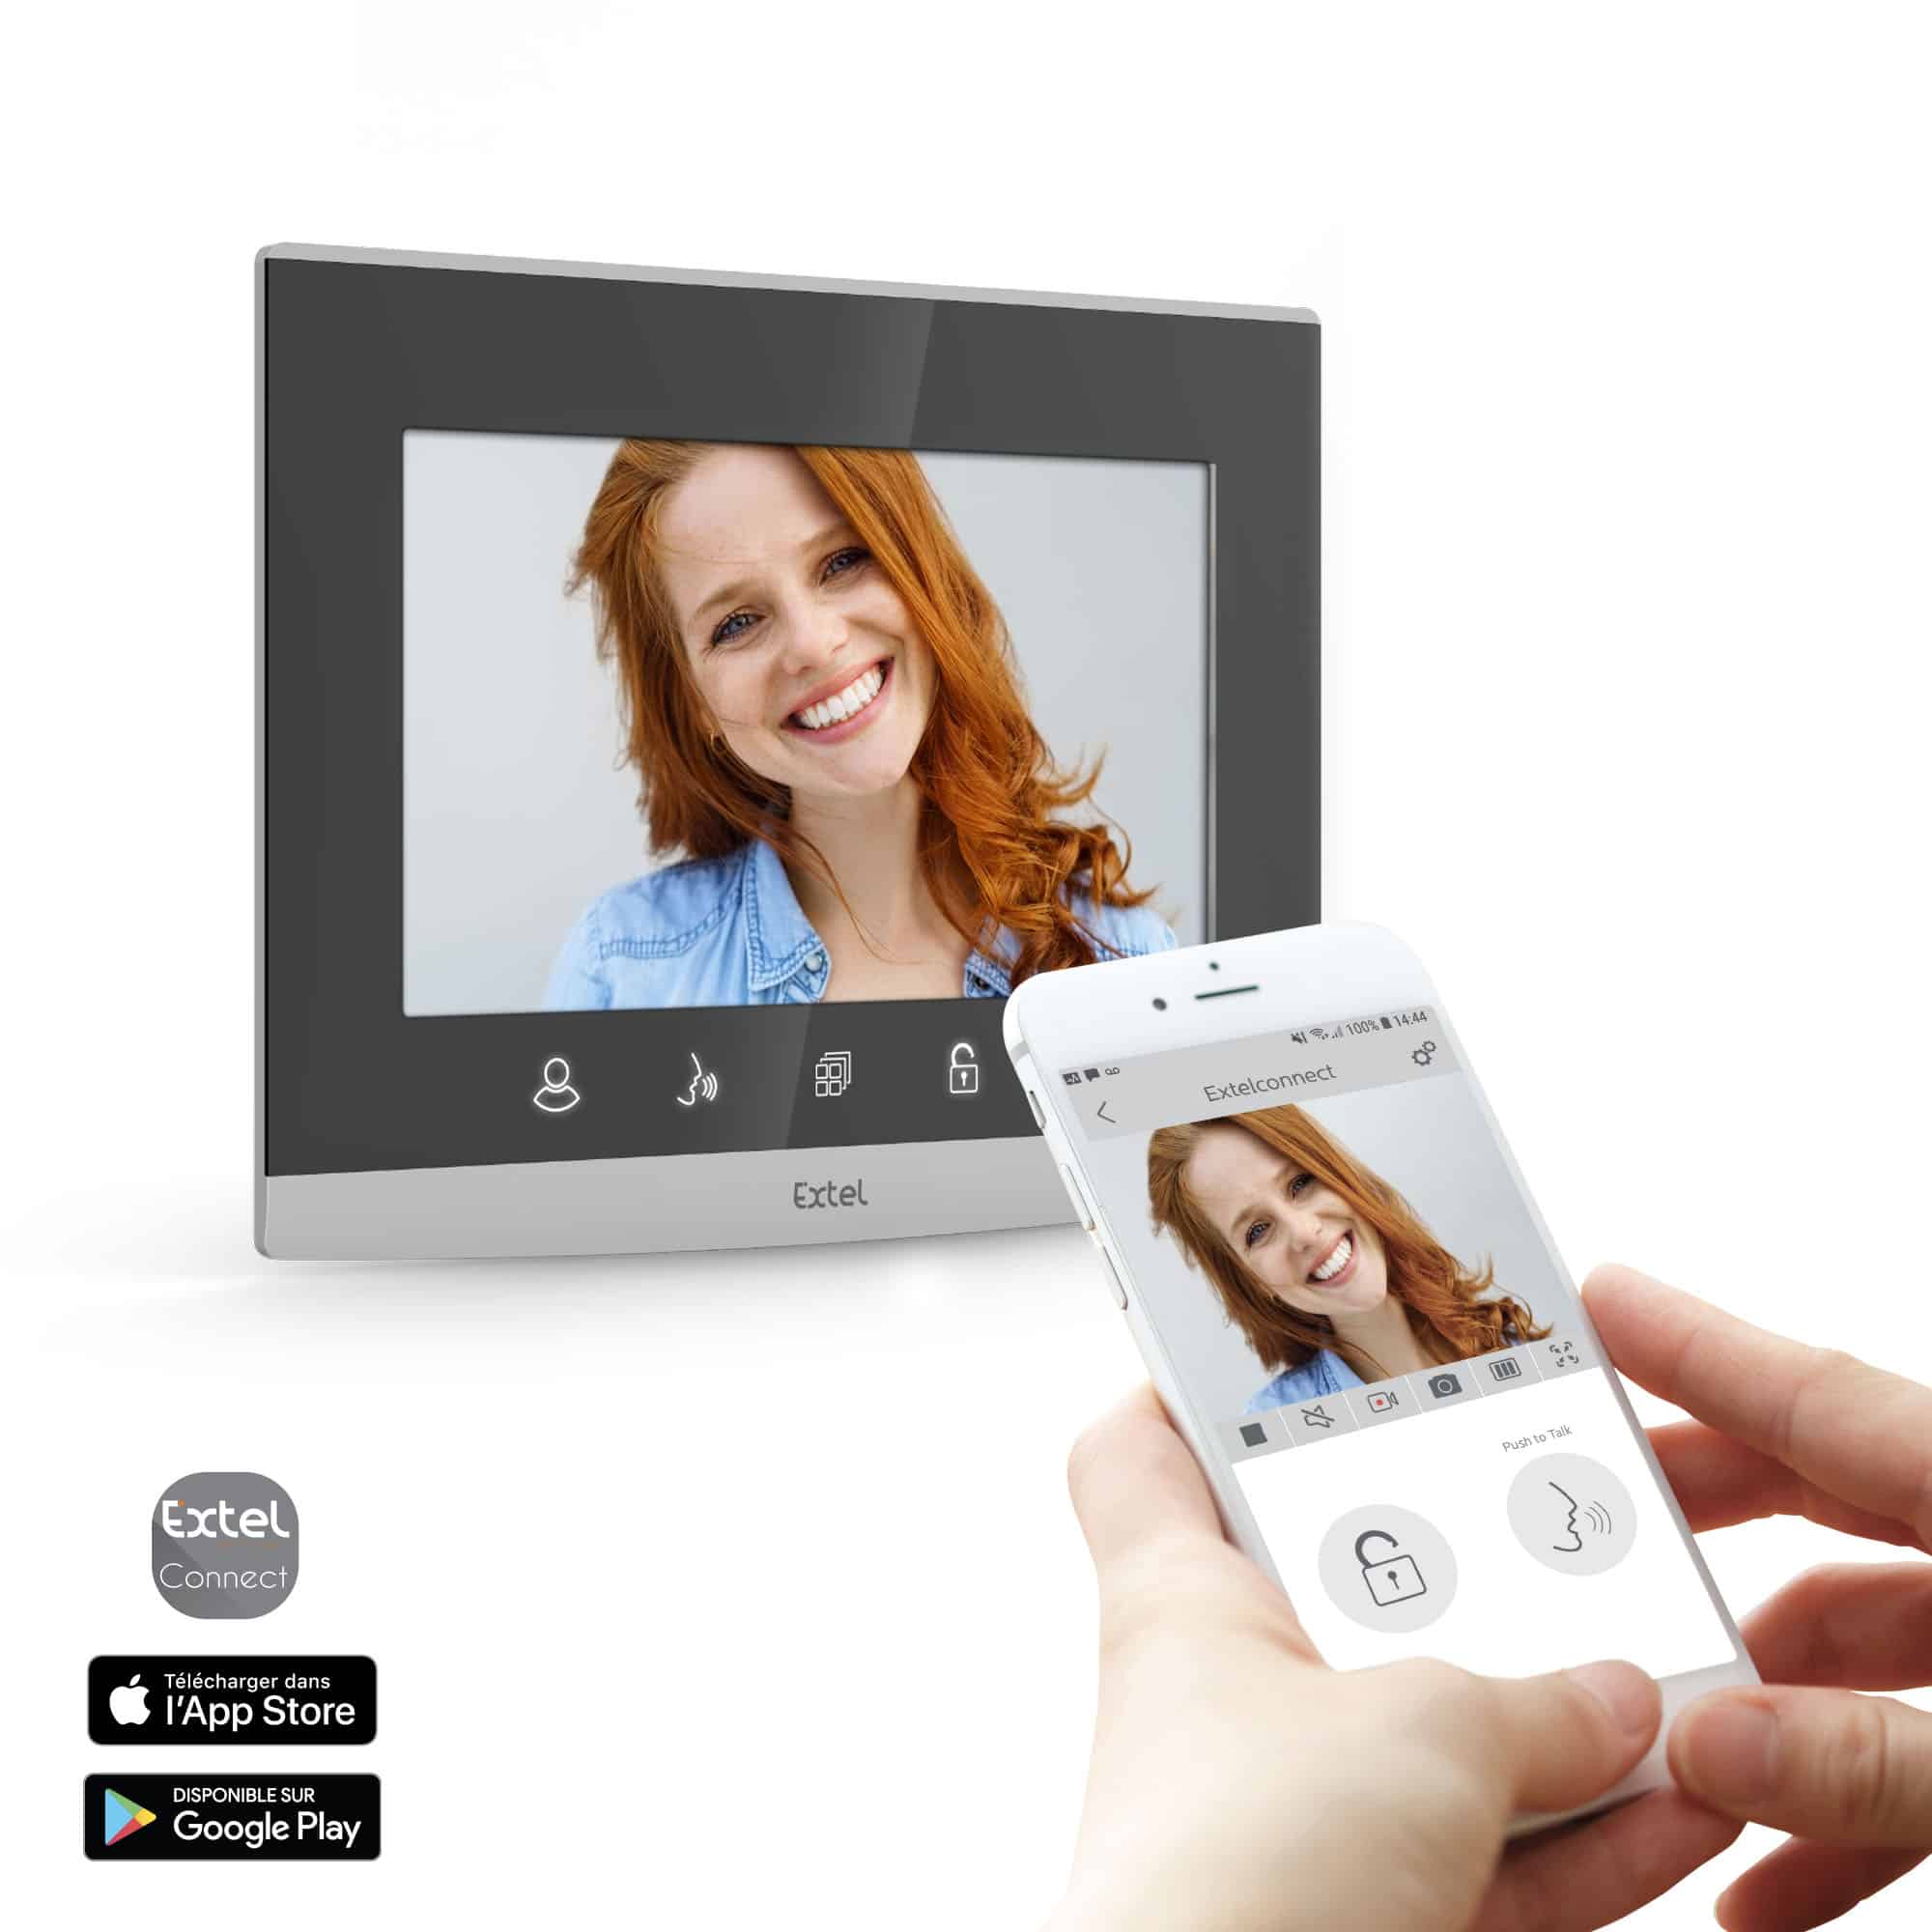 Thomson Interphone vidéo sans fil couleur + antenne